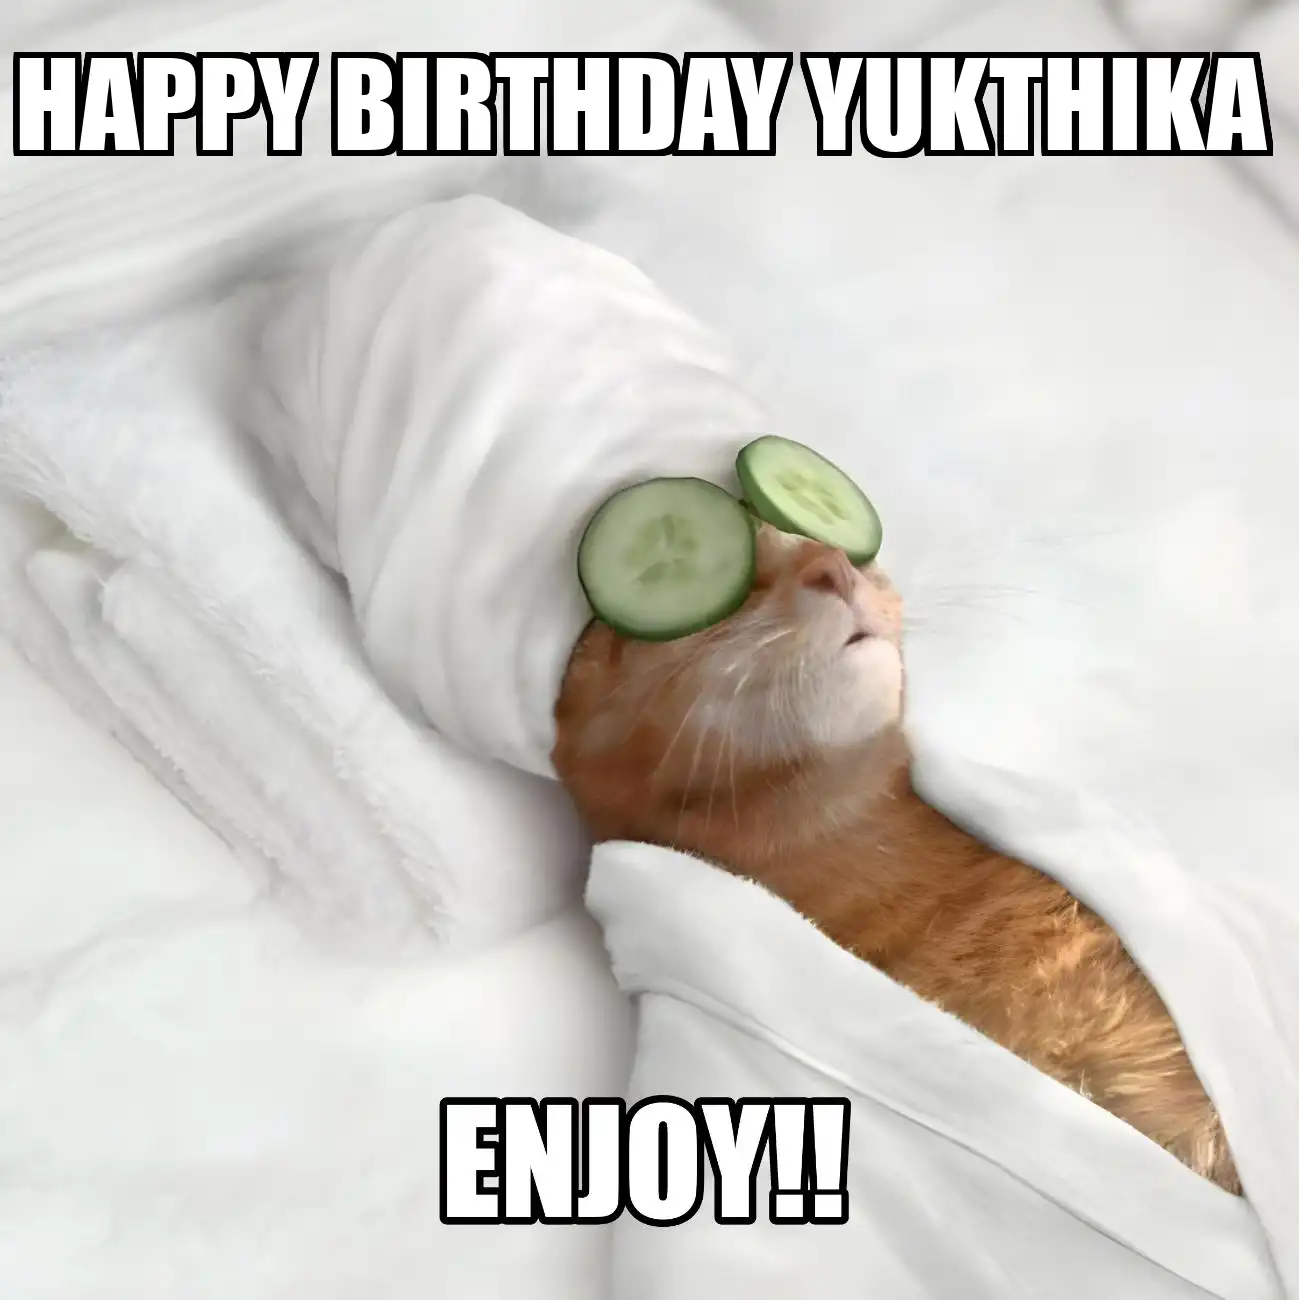 Happy Birthday Yukthika Enjoy Cat Meme